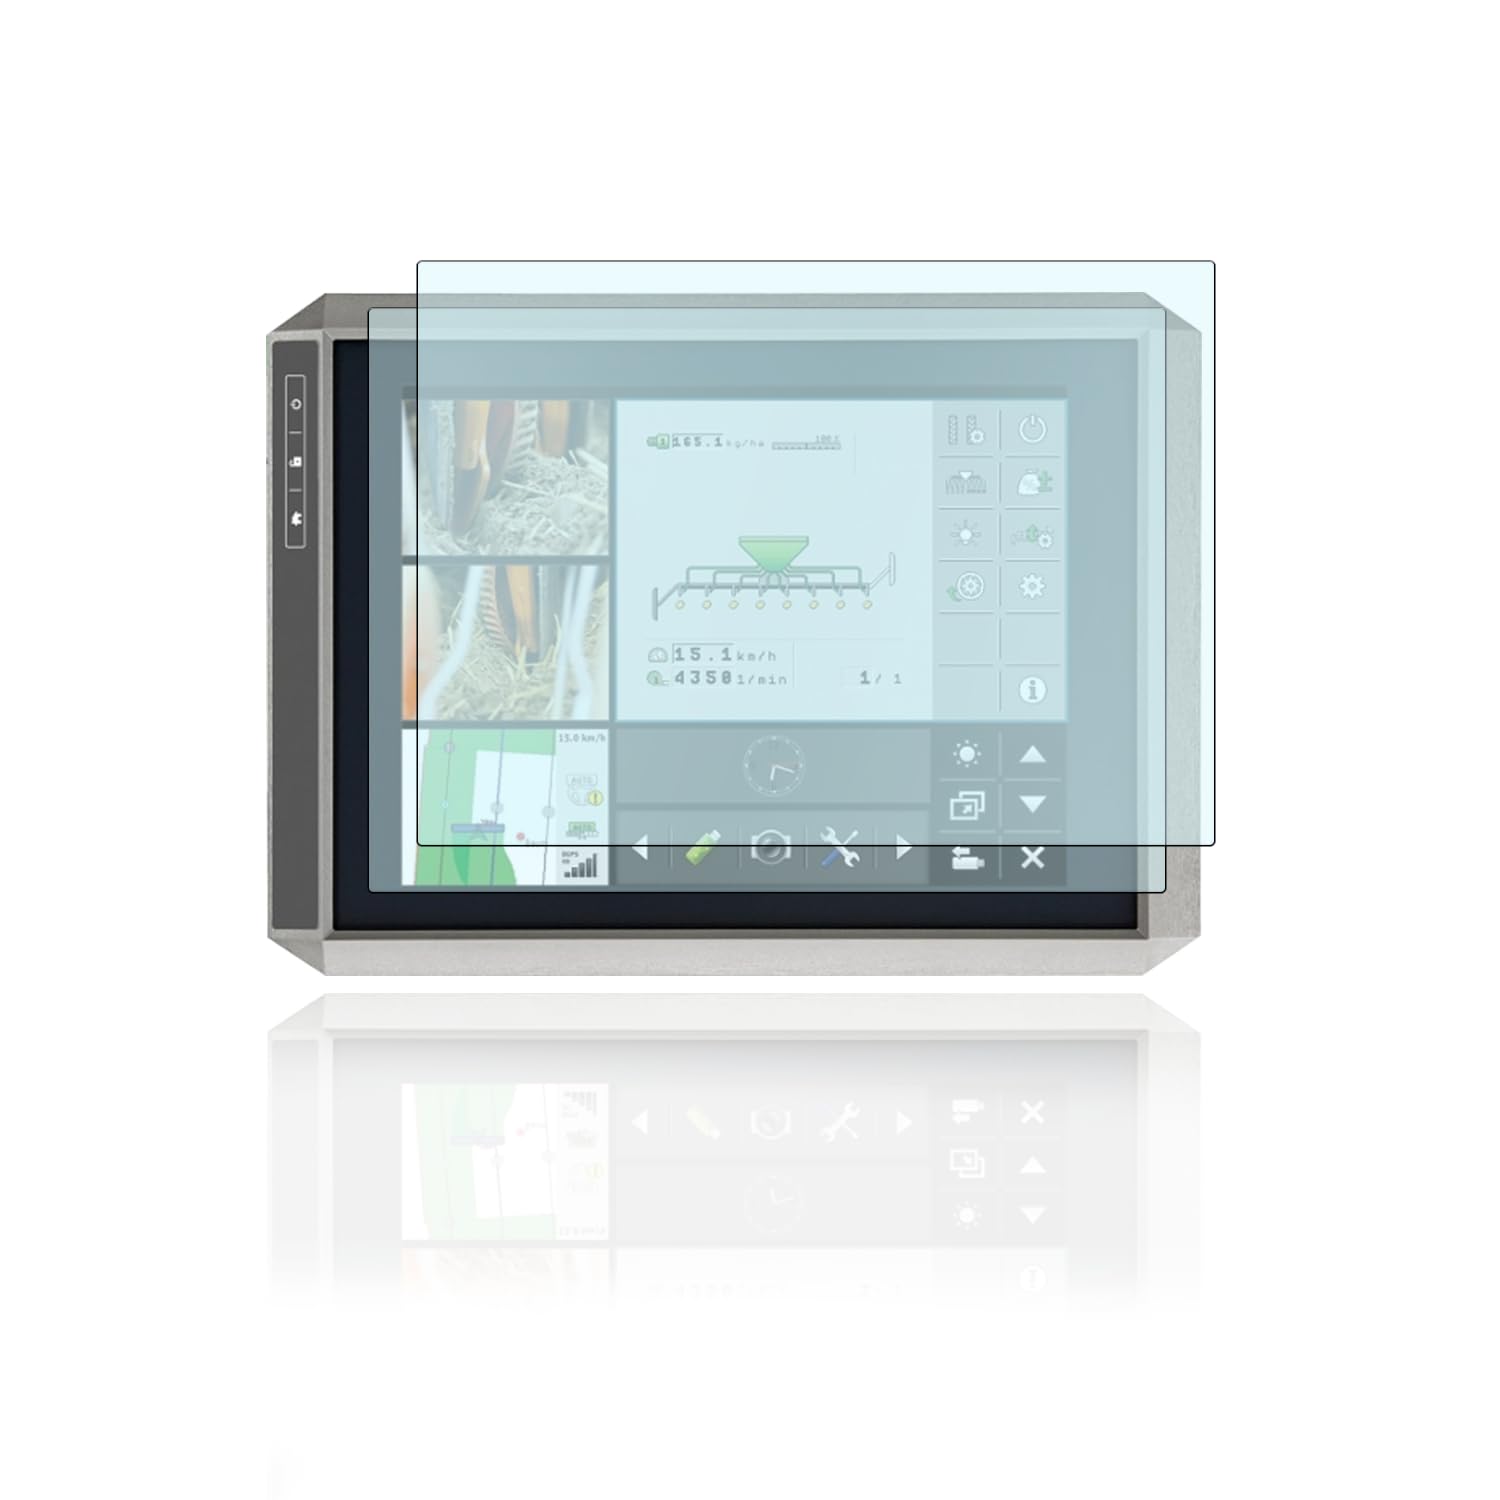 Schutzfolie für Display und Tacho kompatibel mit Müller Elektronik TOUCH 1200 Terminal von Moto Screenies